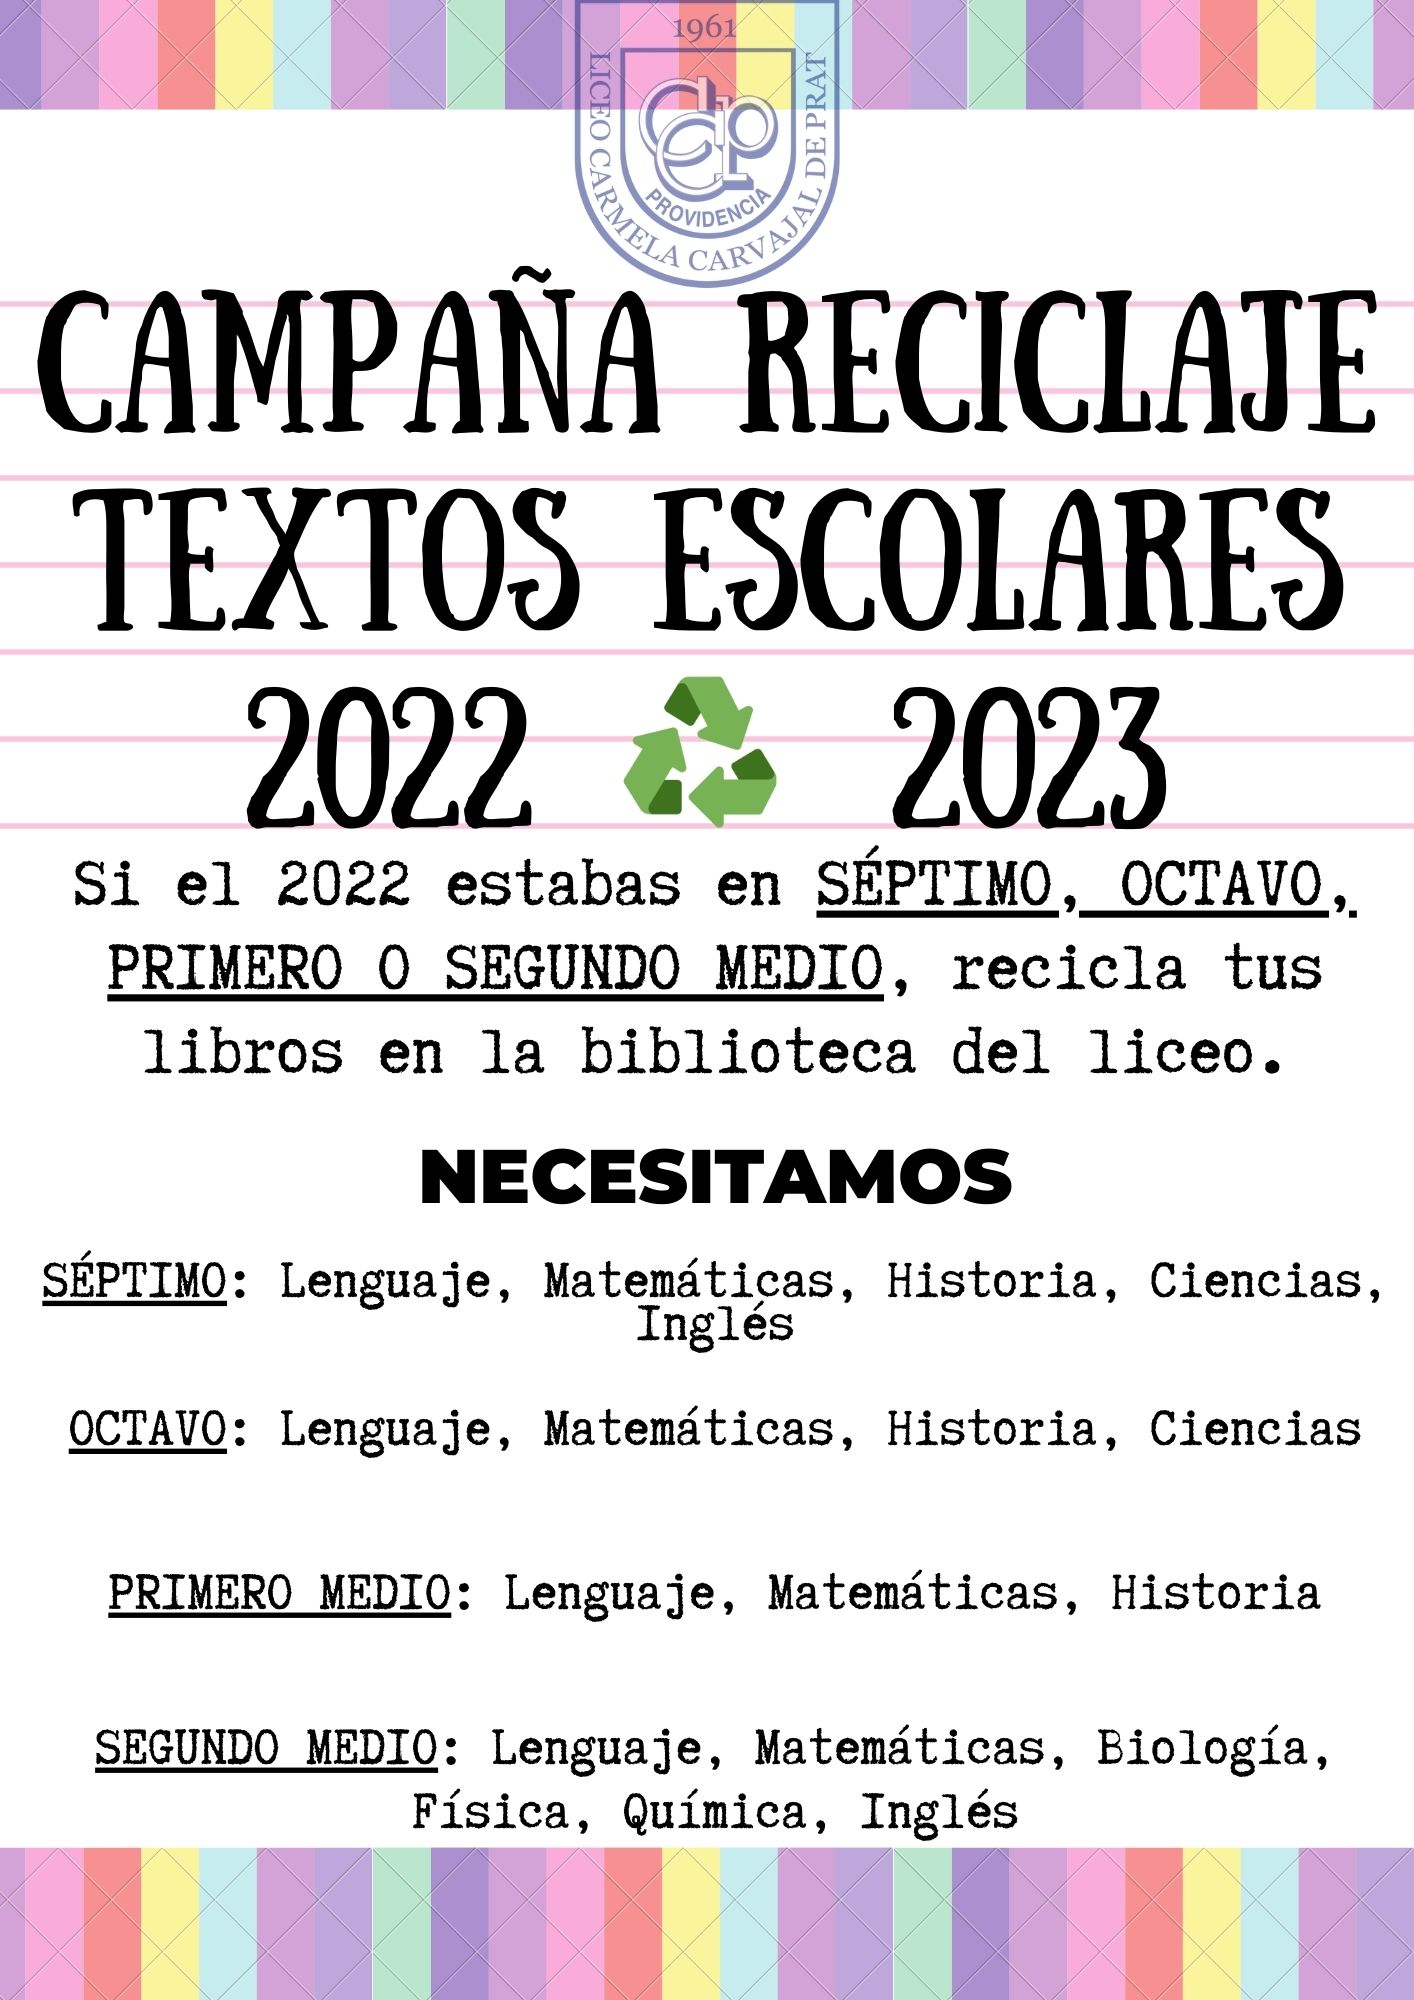 CAMPAÑA RECICLAJE TEXTOS ESCOLARES 2022 2023 (1)